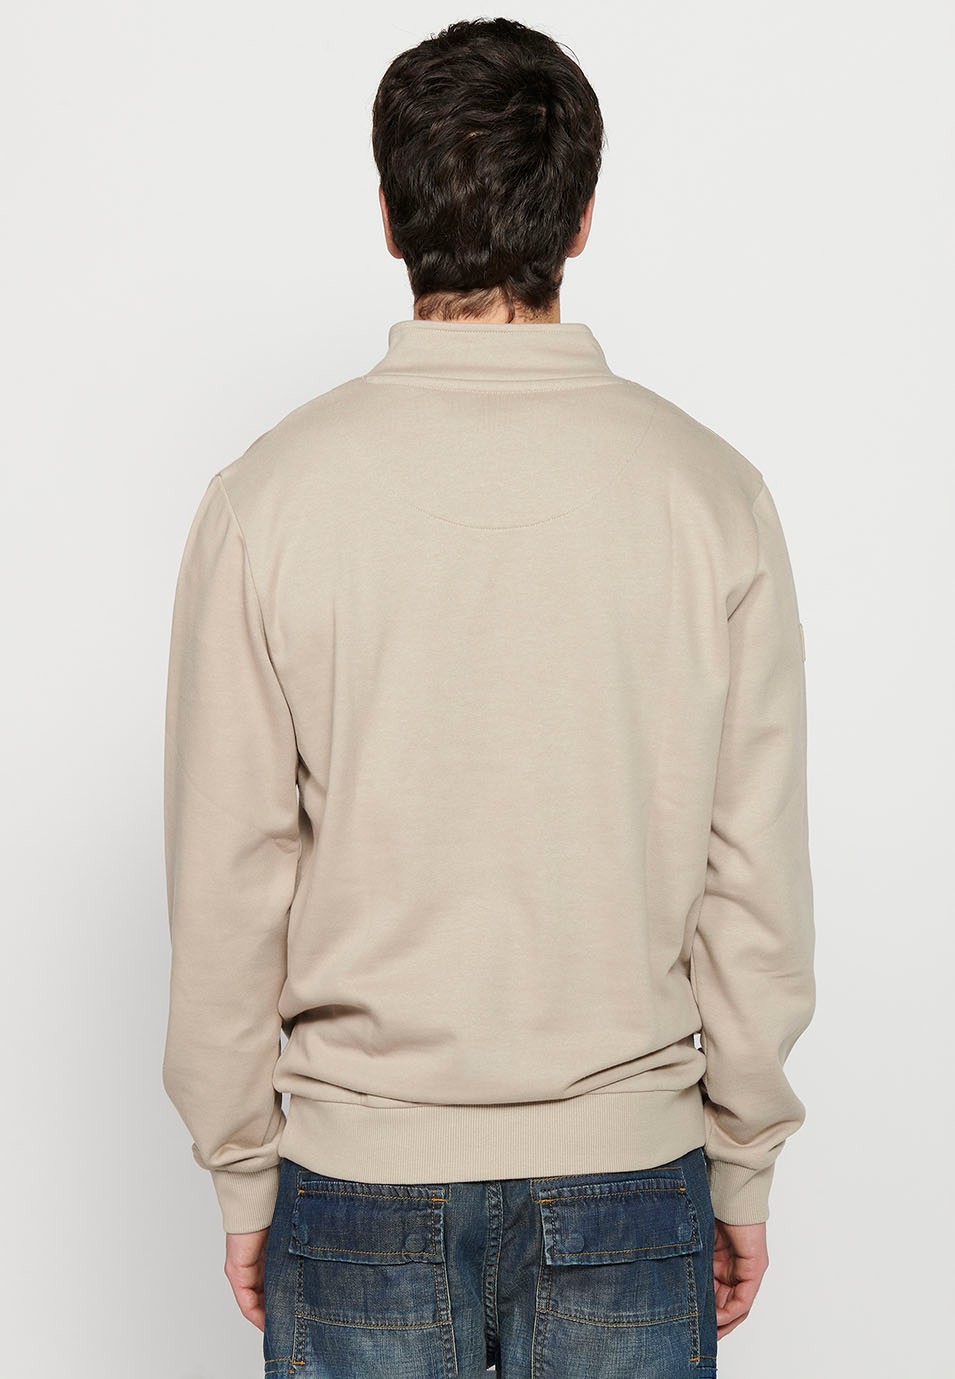 Herren-Sweatshirt mit Stehkragen, steinfarben, vorne, Reißverschluss, langärmlig